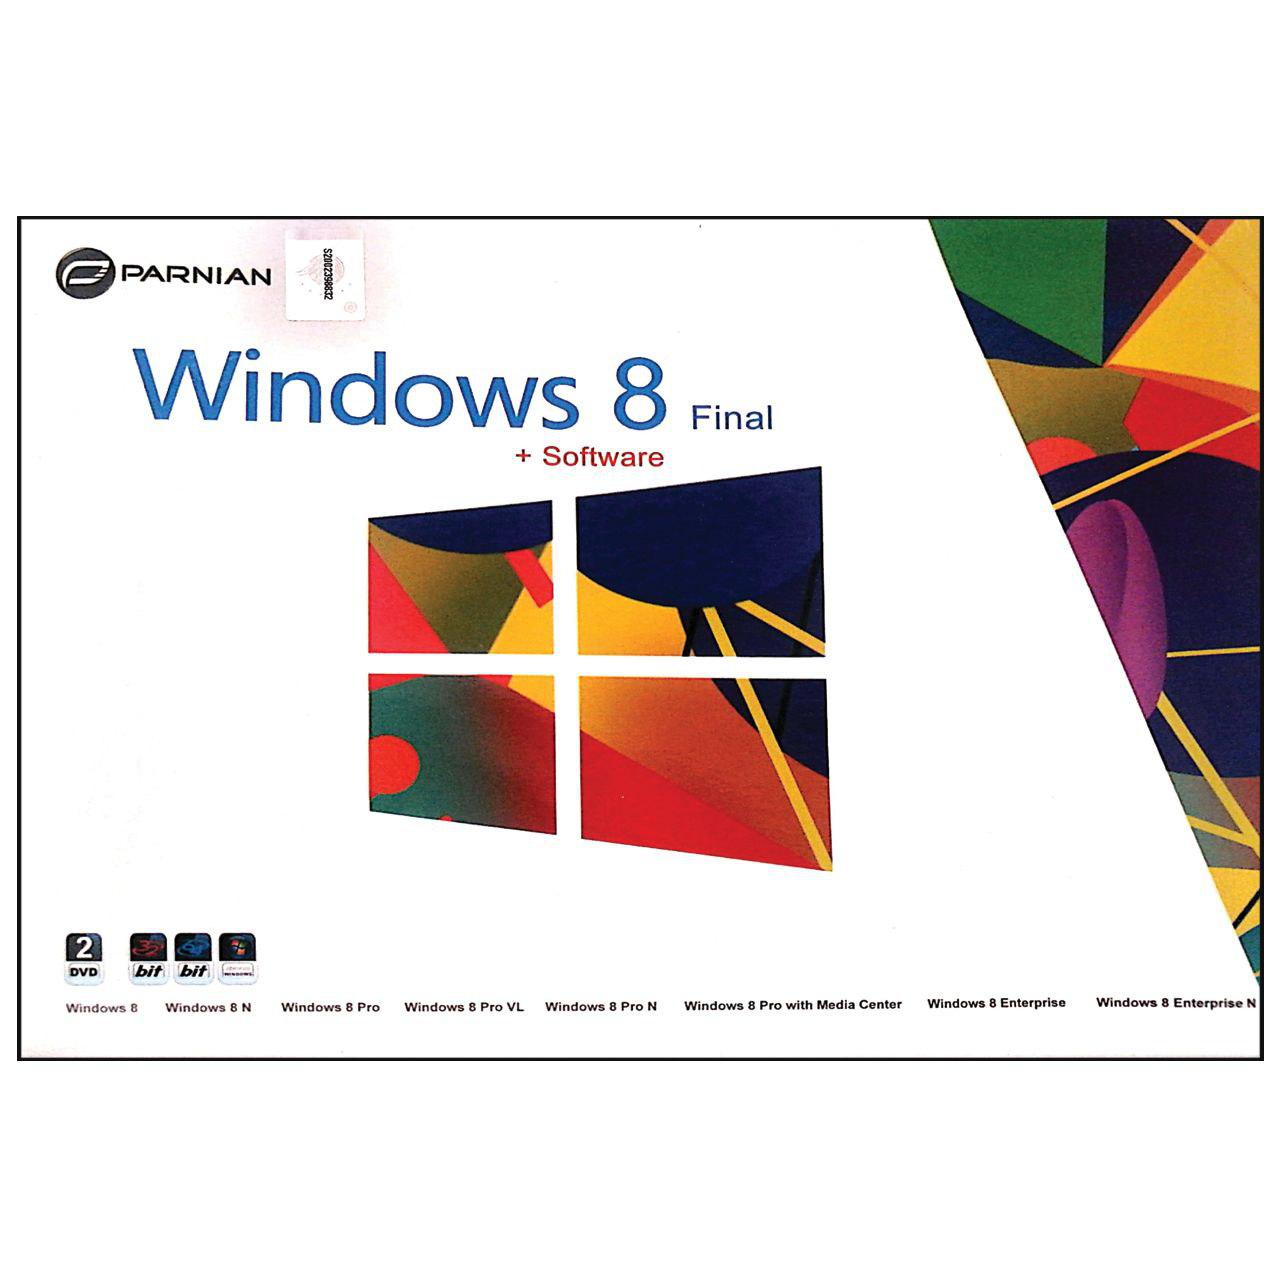 سیستم عامل windows 8 + Tools نشر پرنیان